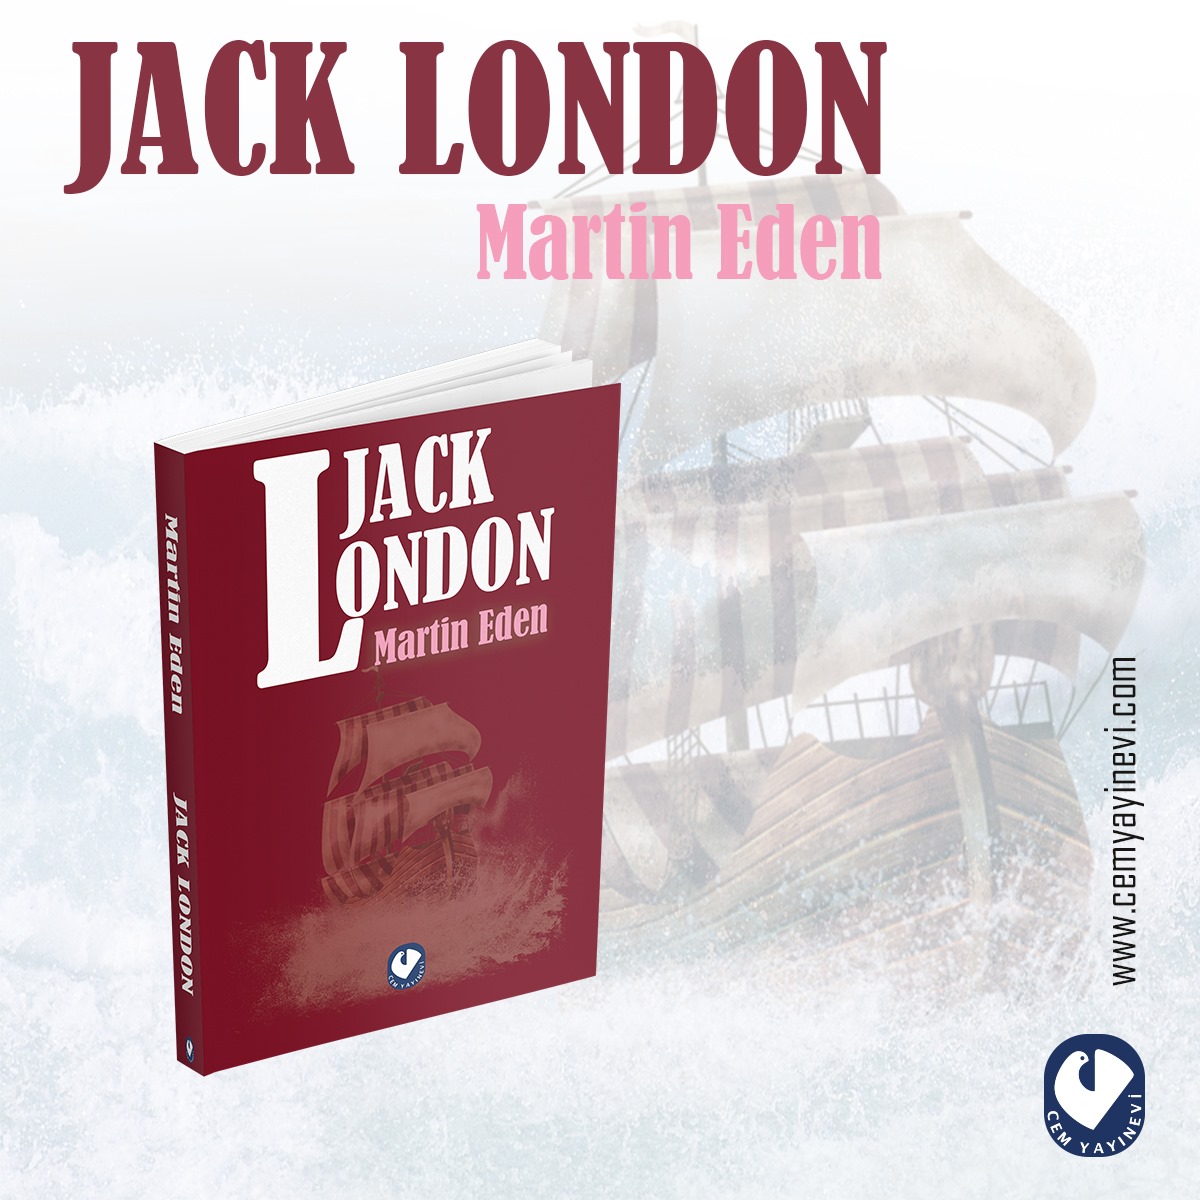 Cem Yayınevi, ünlü yazar Jack London’un (1876-1916) tüm dünyada olduğu gibi Türkiye’de de olağanüstü ilgiyle karşılanan eserlerini okurlarına toplu olarak sunuyor. Jack London’un roman, öykü, deneme ve anı kitapla-rından oluşan bu toplamda,